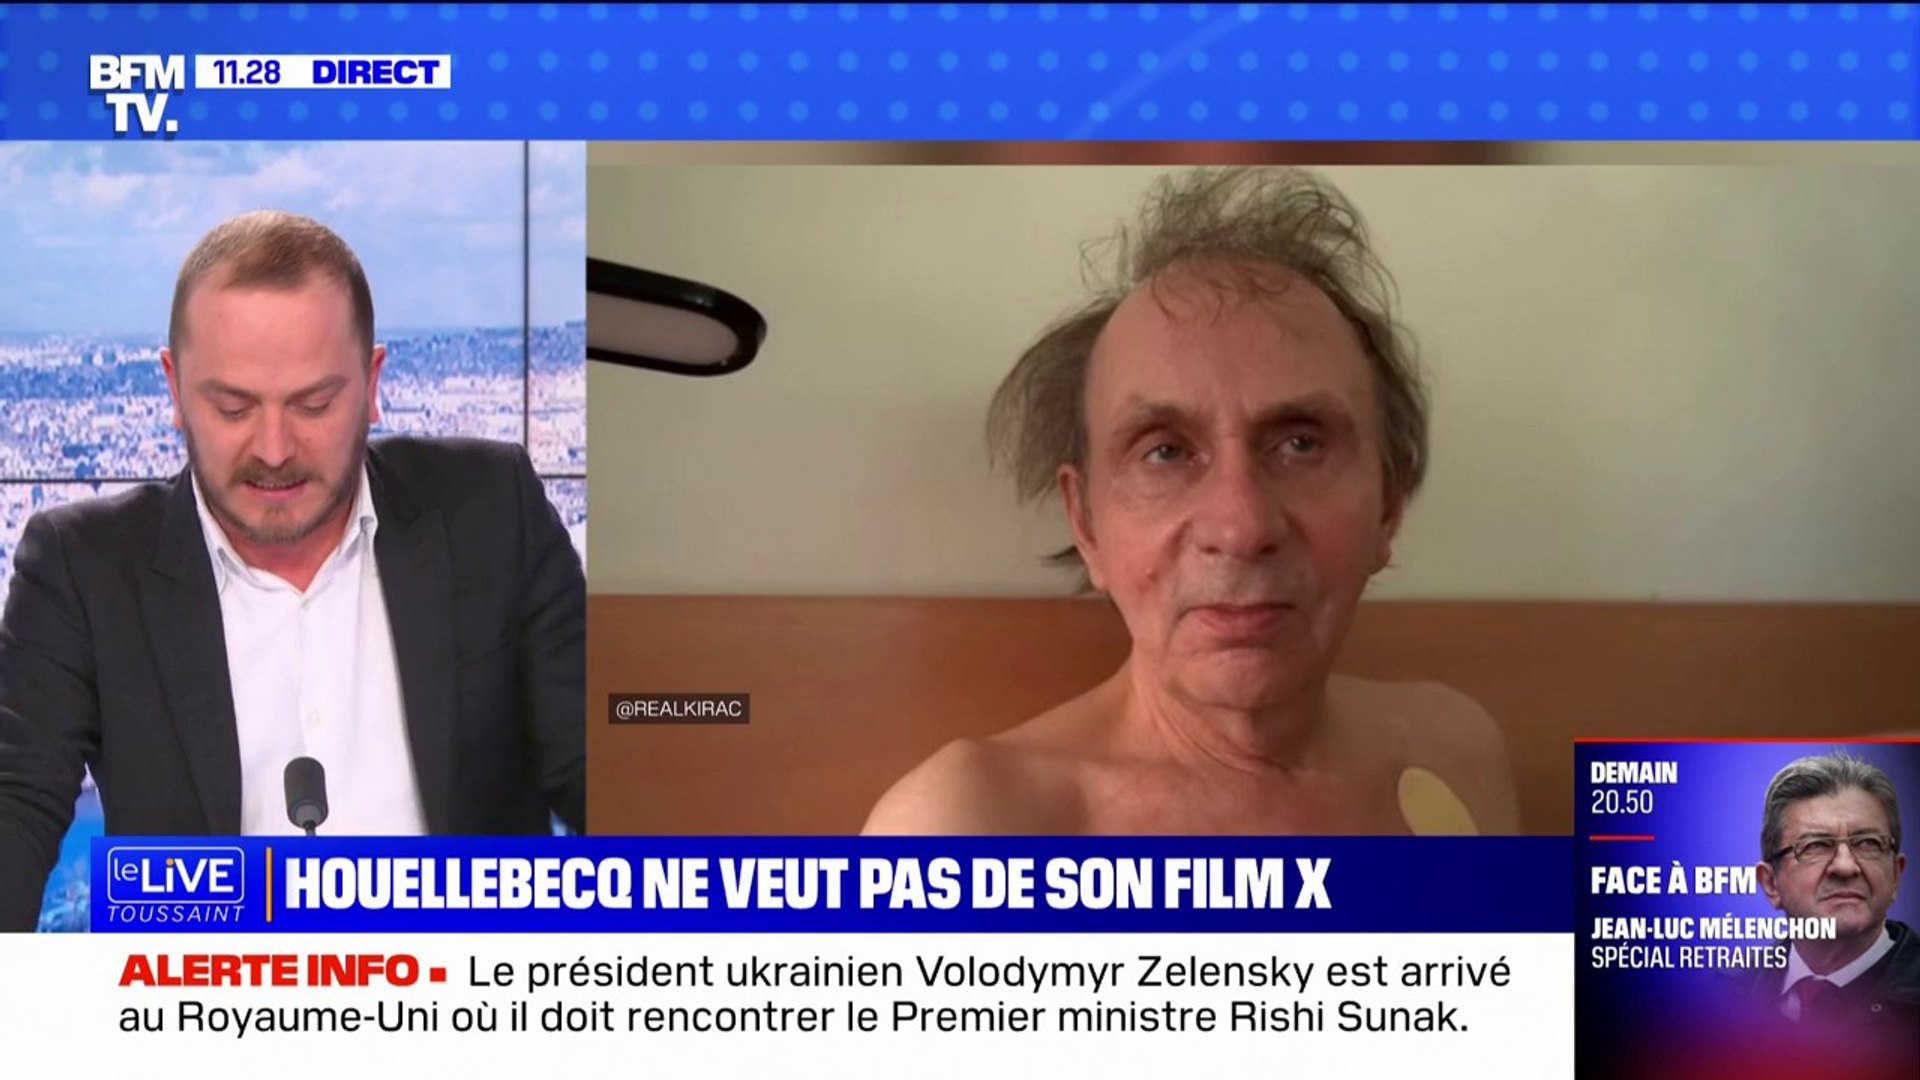 Michel Houellebecq veut faire interdire le film pornographique néerlandais le mettant en scène image